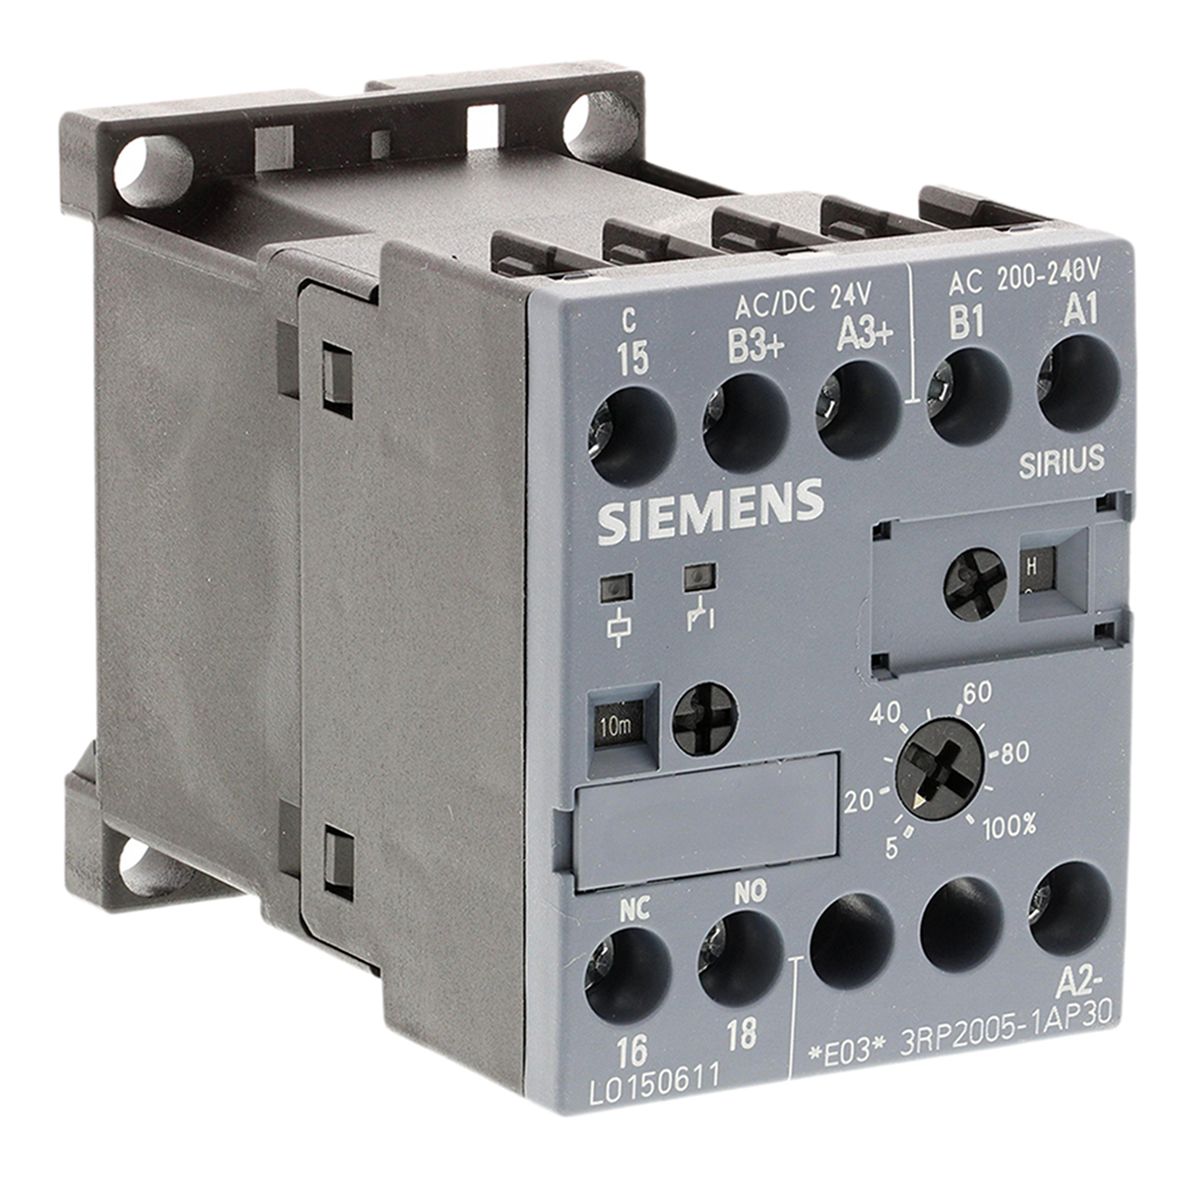 Siemens DIN Rail Multi Function Timer Relay, 110 → 240 V ac, 24V ac/dc, SPDT, 0.05 → 100 h, 0.05 →